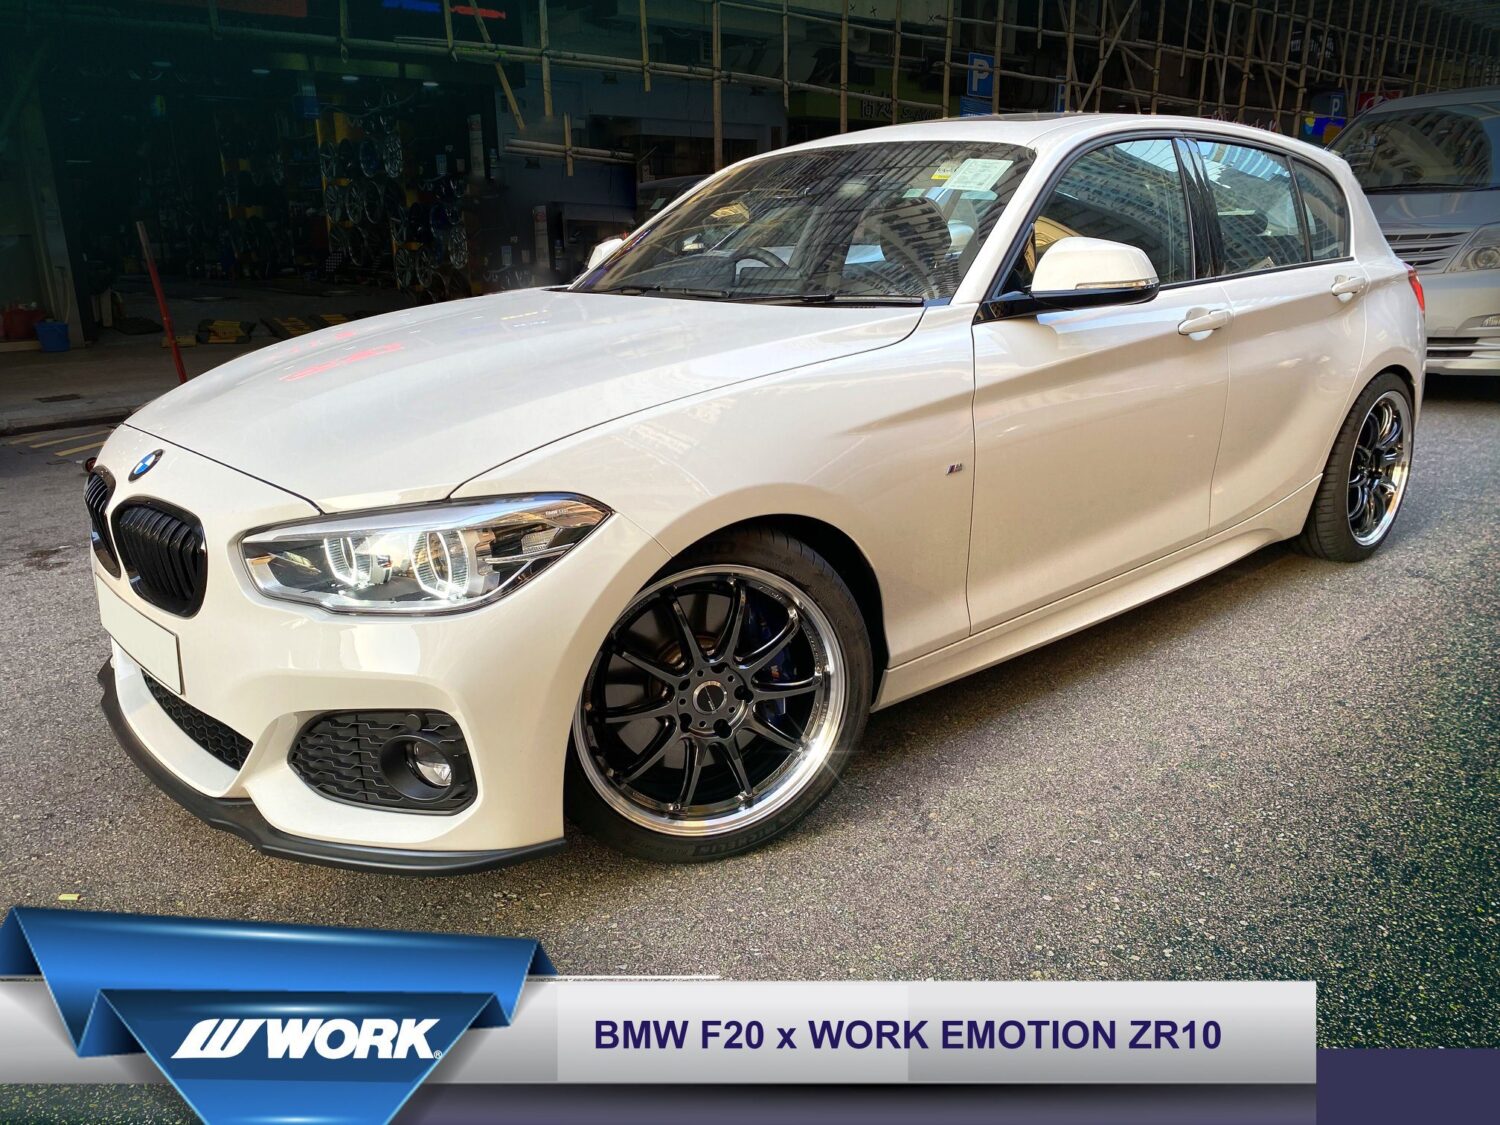 BMW 1 series F20 with 18-inch Work Emotion ZR10
